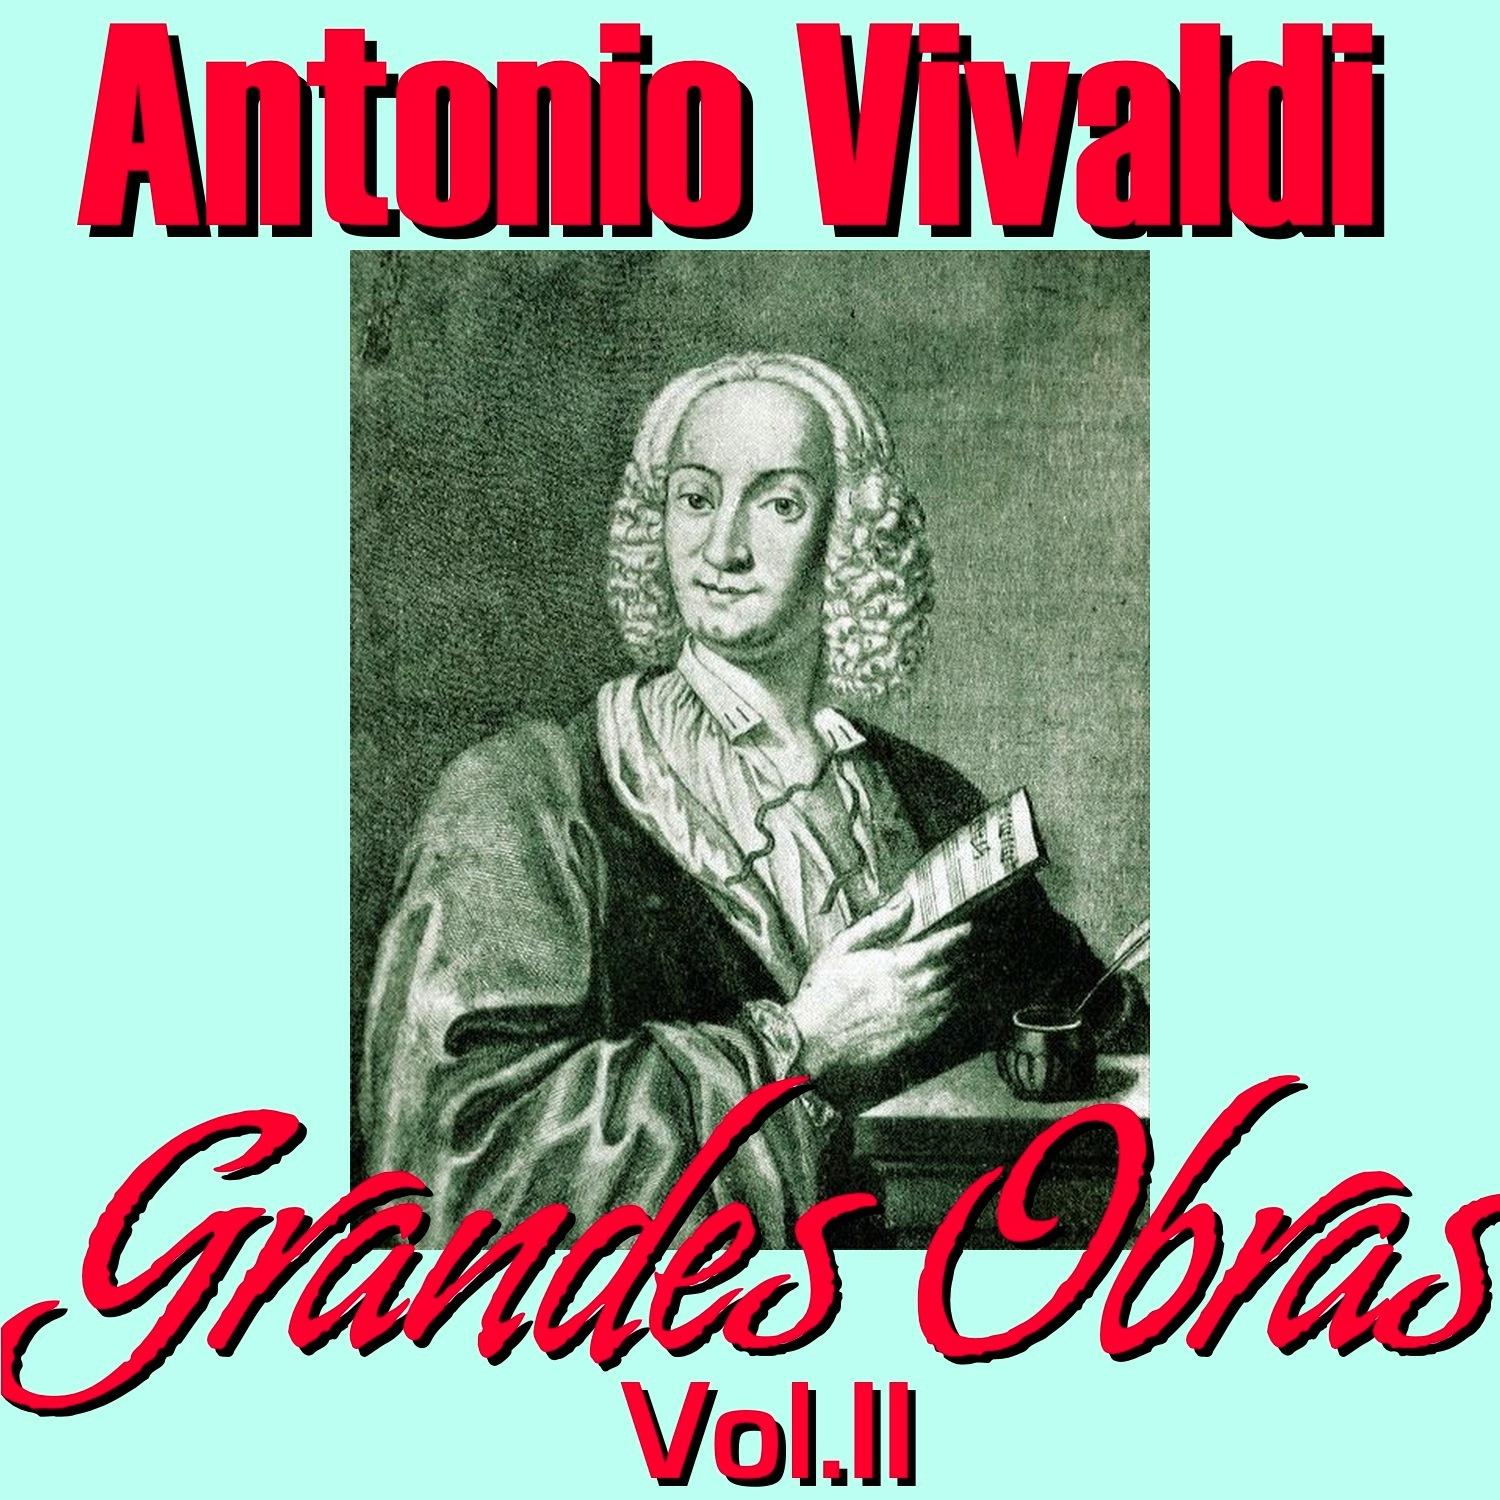 Antonio Vivaldi Grandes Obras Vol. II